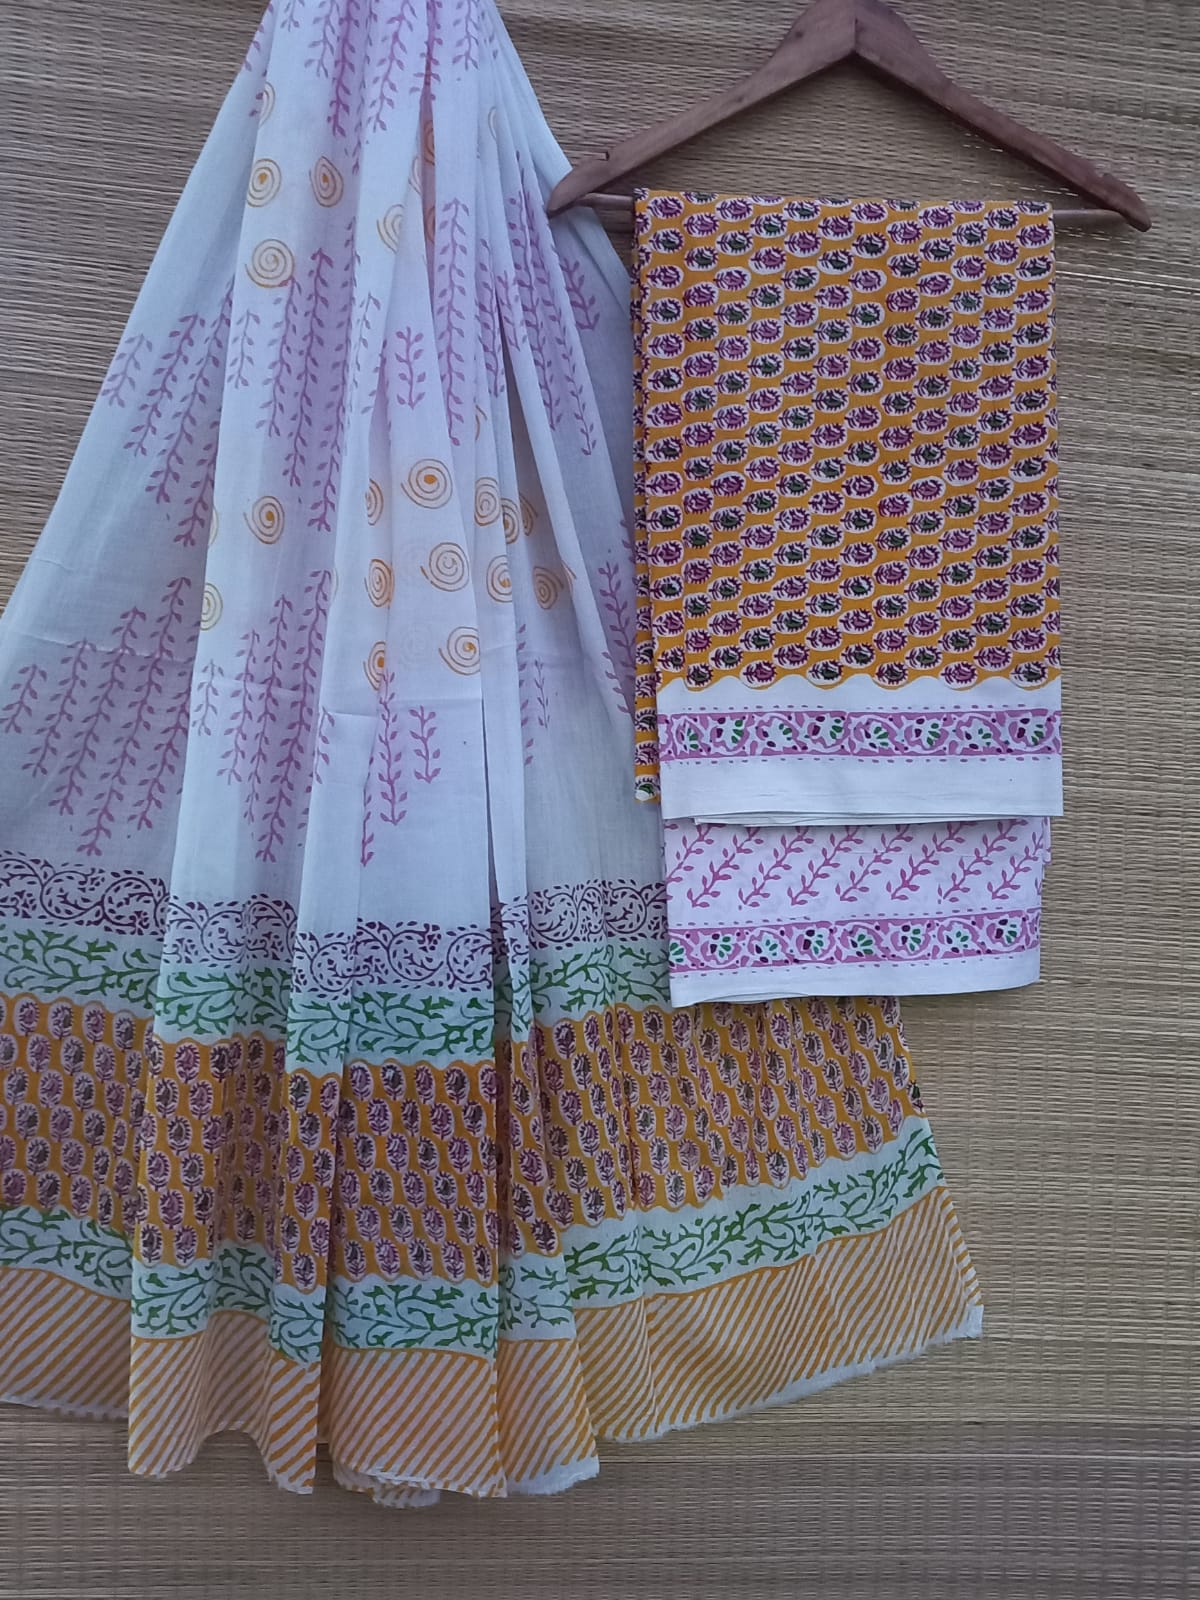 Hand Block Cotton Unstitched Salwar Suit With Cotton/Mulmul Dupatta - JBCM770